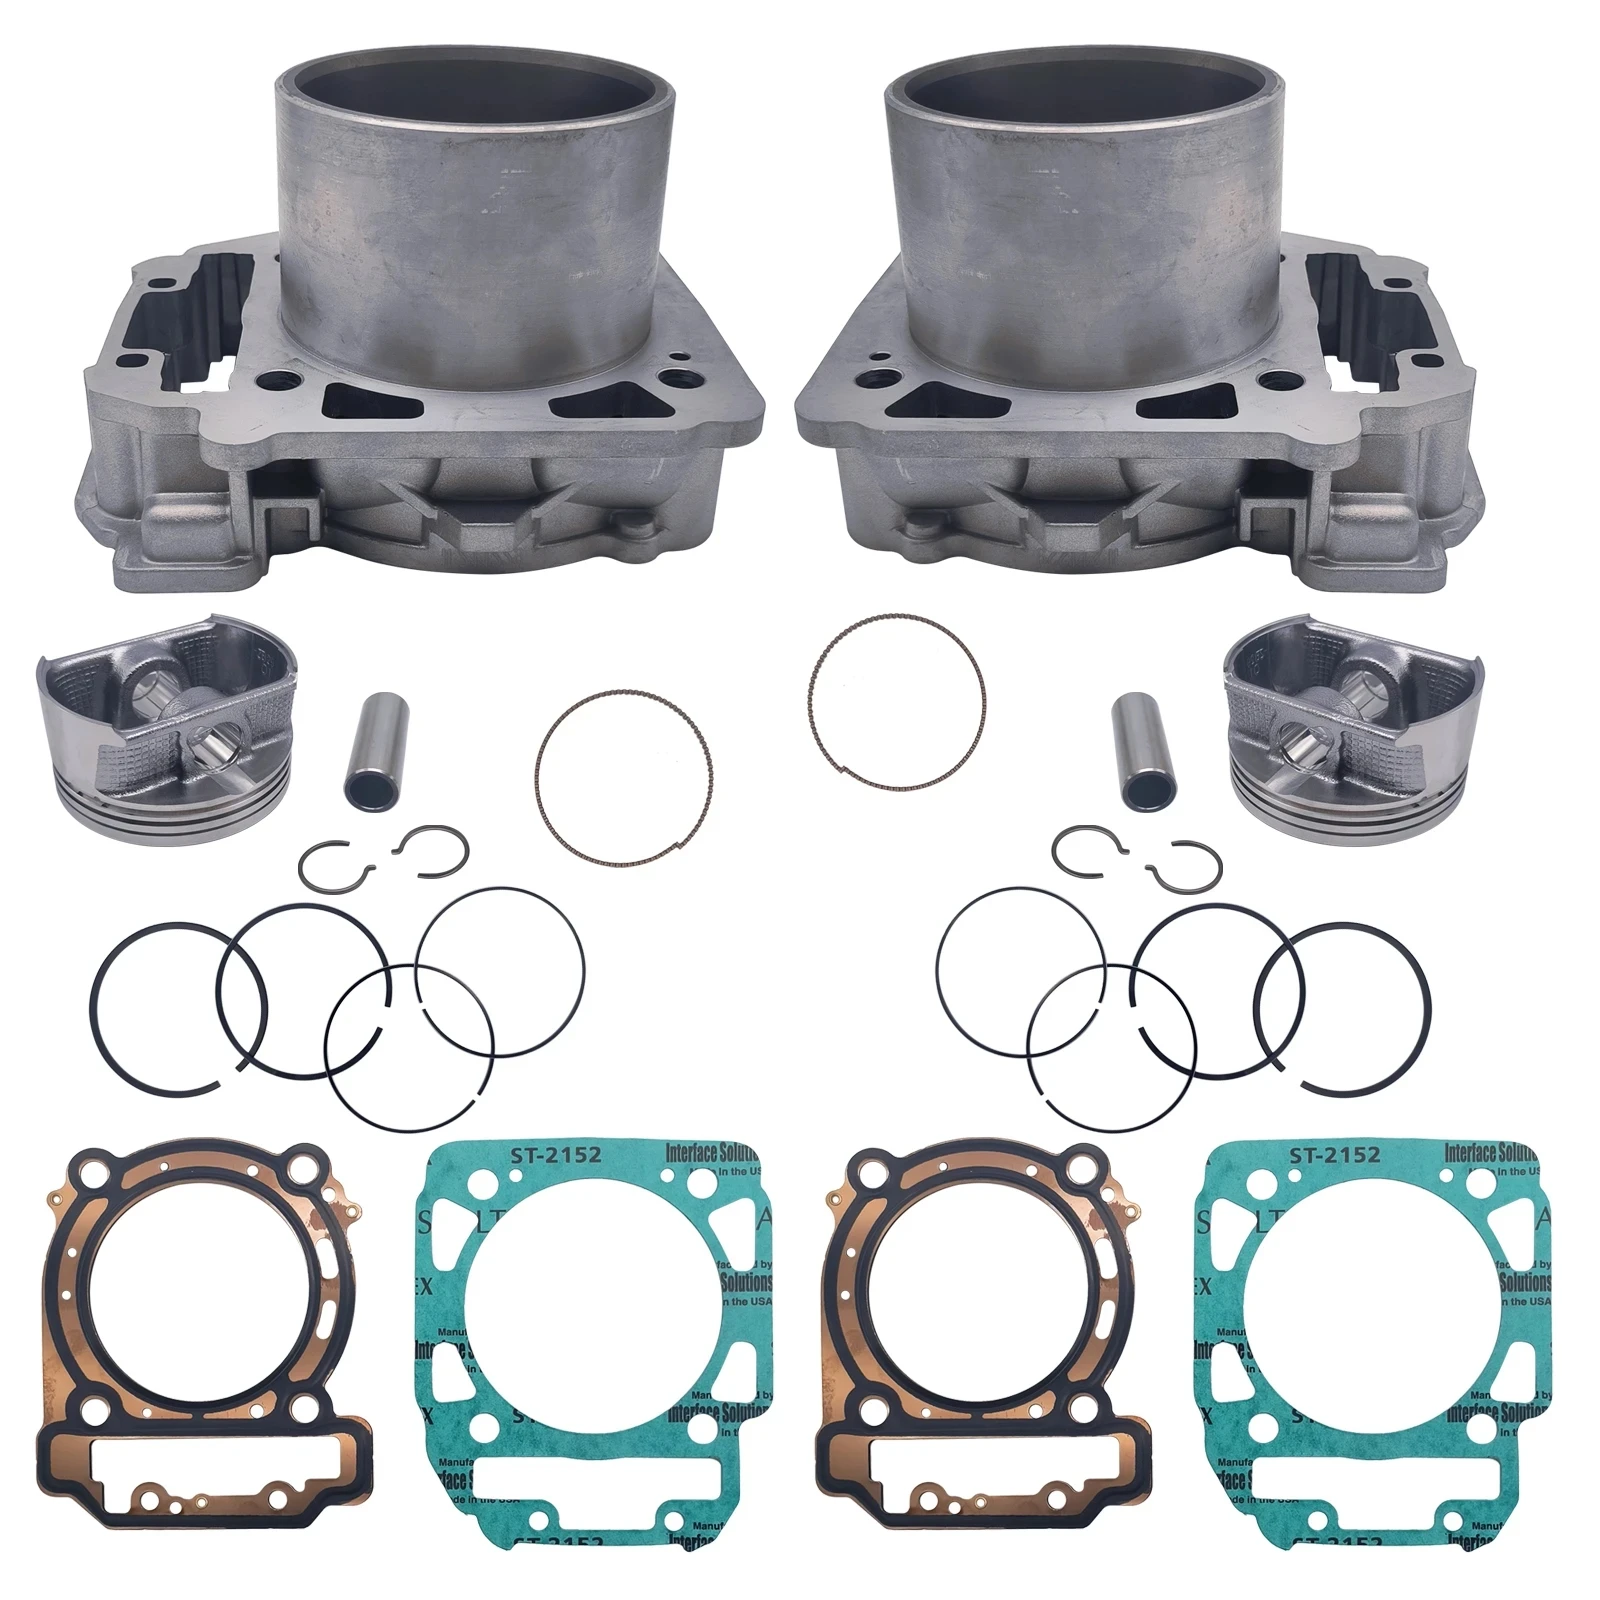 2 Sets Cylinder Kit for Stels Guepard Rosomaha Viking Ermak 800 Enduro 400 ATV 100402-001-0000 LU049838 100401-800-0000 LU072405